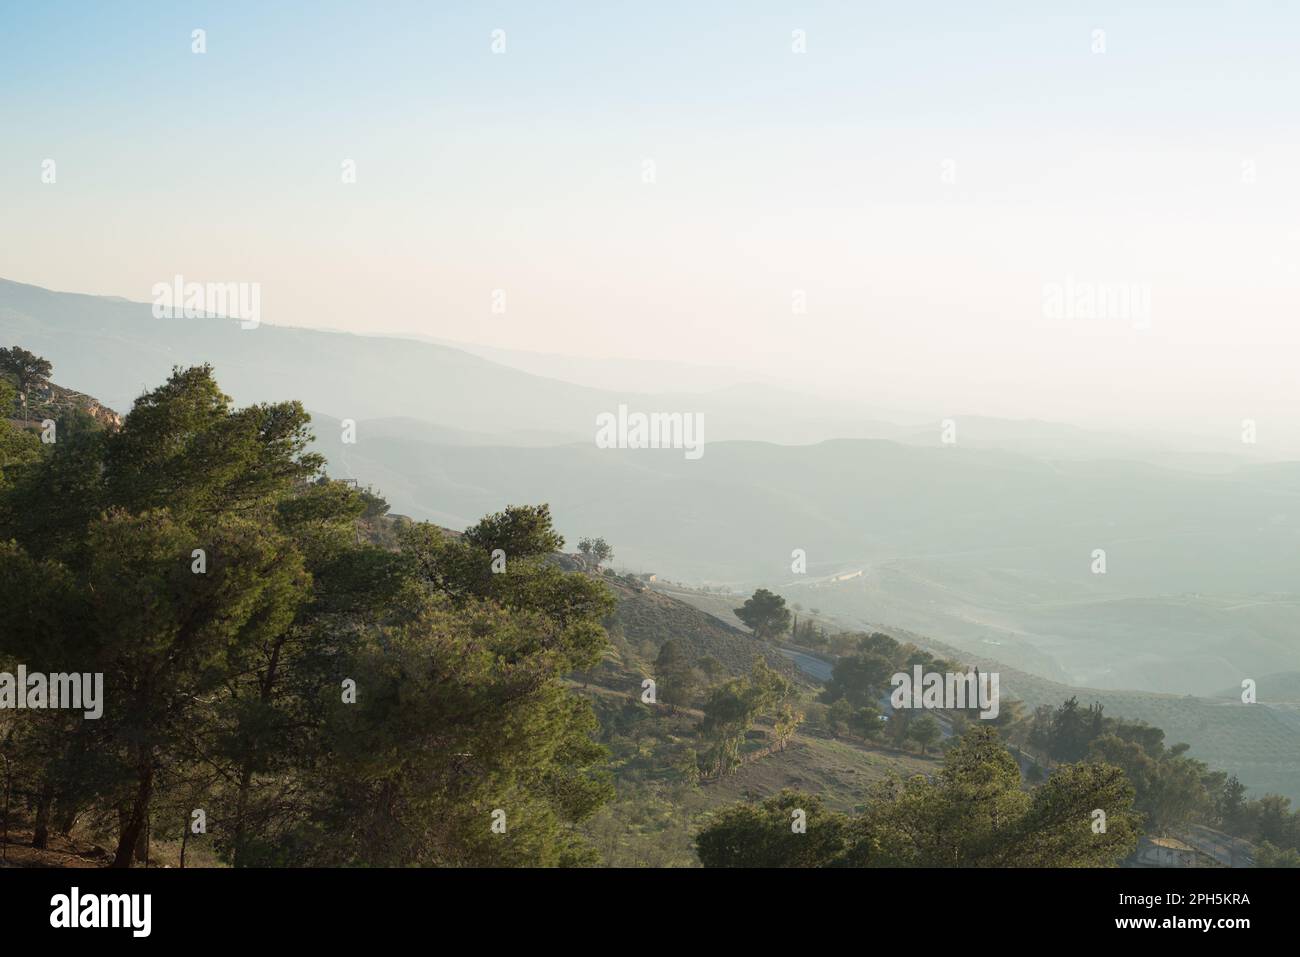 orizzonte foggy con montagne lontane e scogliera piena di pini Foto Stock